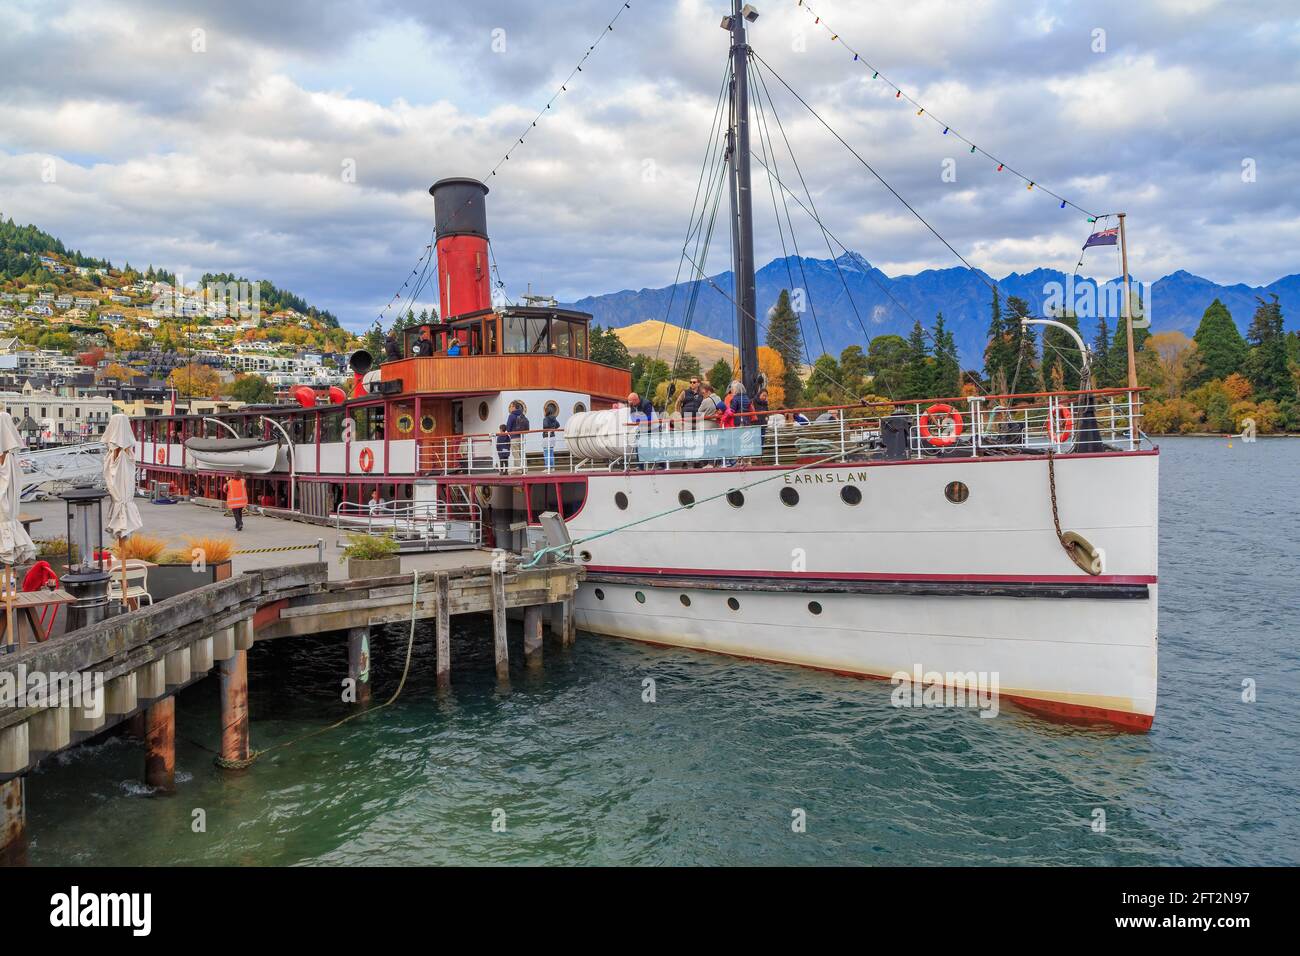 Die TSS Earnslaw, ein historisches Dampfschiff, das 1912 ins Leben gerufen wurde, wurde in Queenstown, Neuseeland, gebunden und steht kurz vor der Abfahrt zu einer Kreuzfahrt auf dem Lake Wakatipu Stockfoto